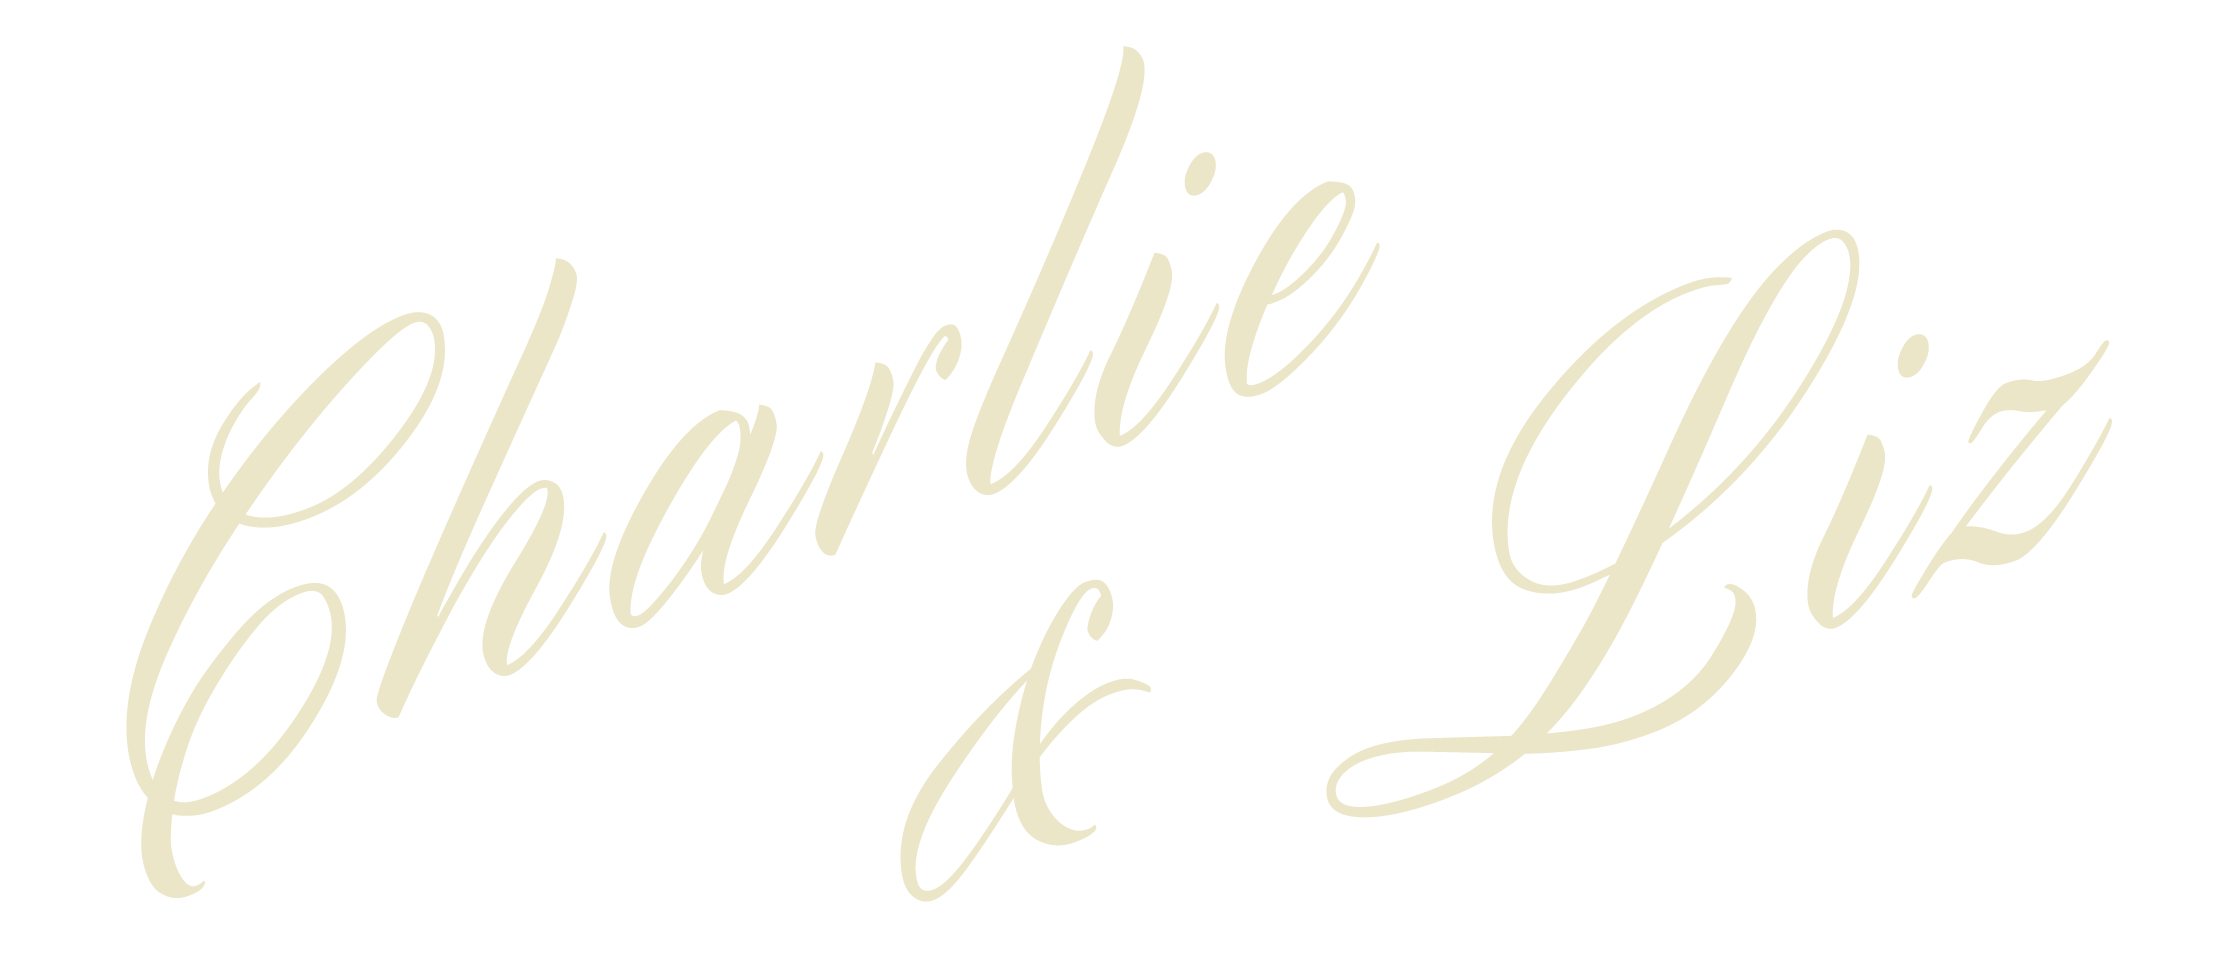 Charlie and Liz